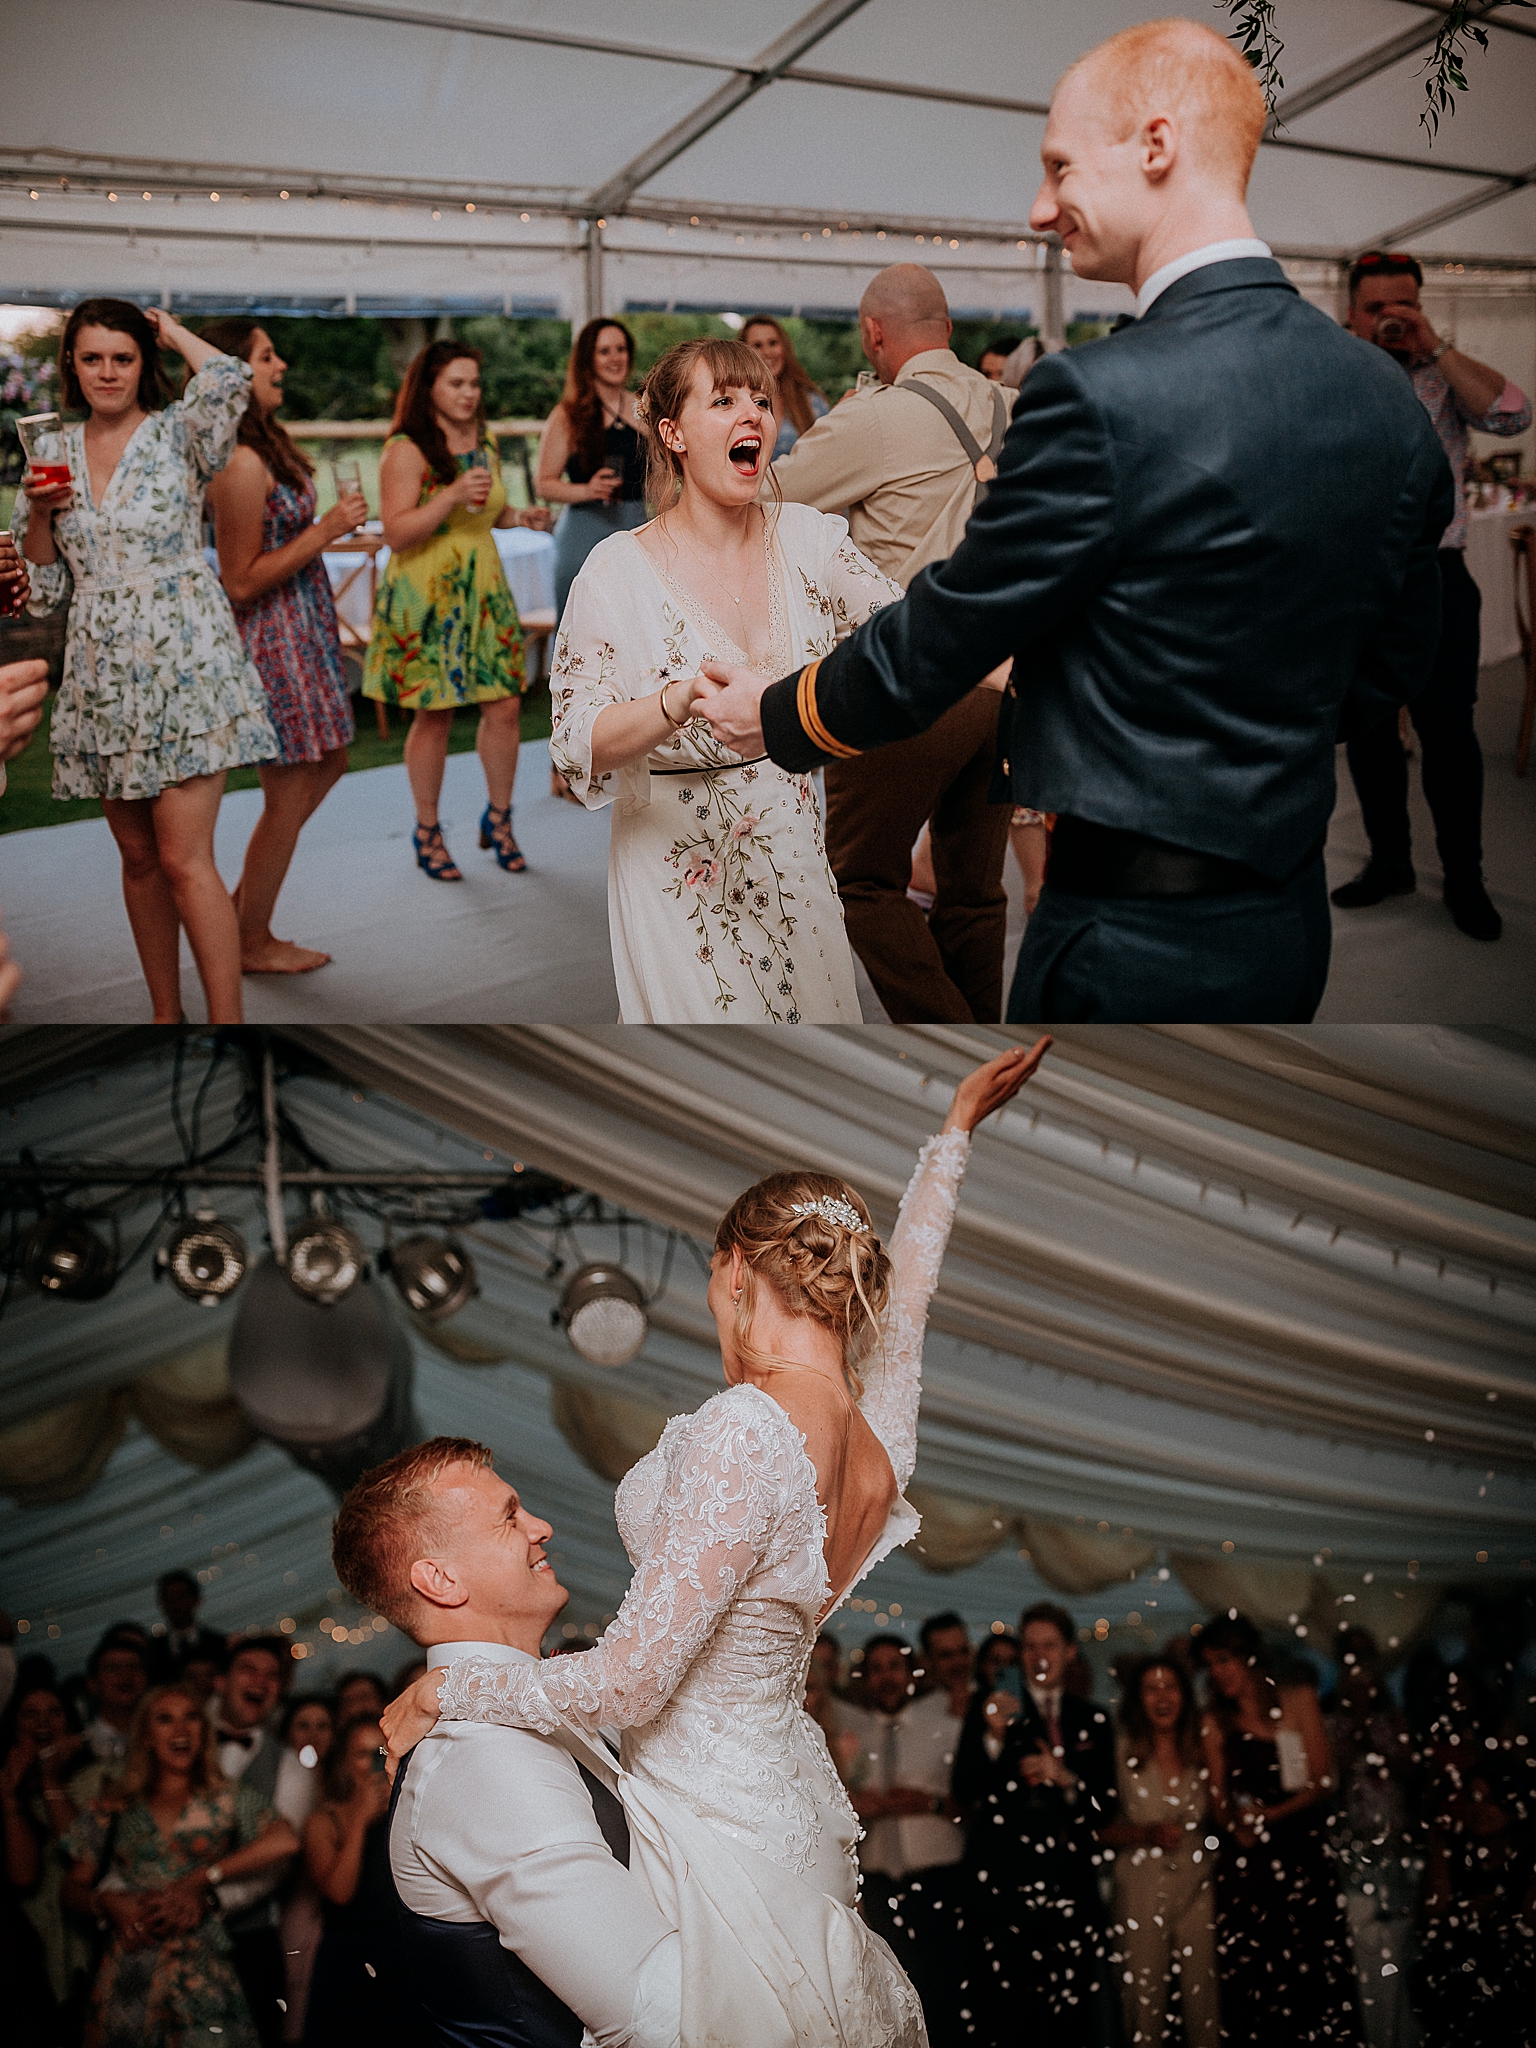 Creative Wedding Photography - Wedding Dance